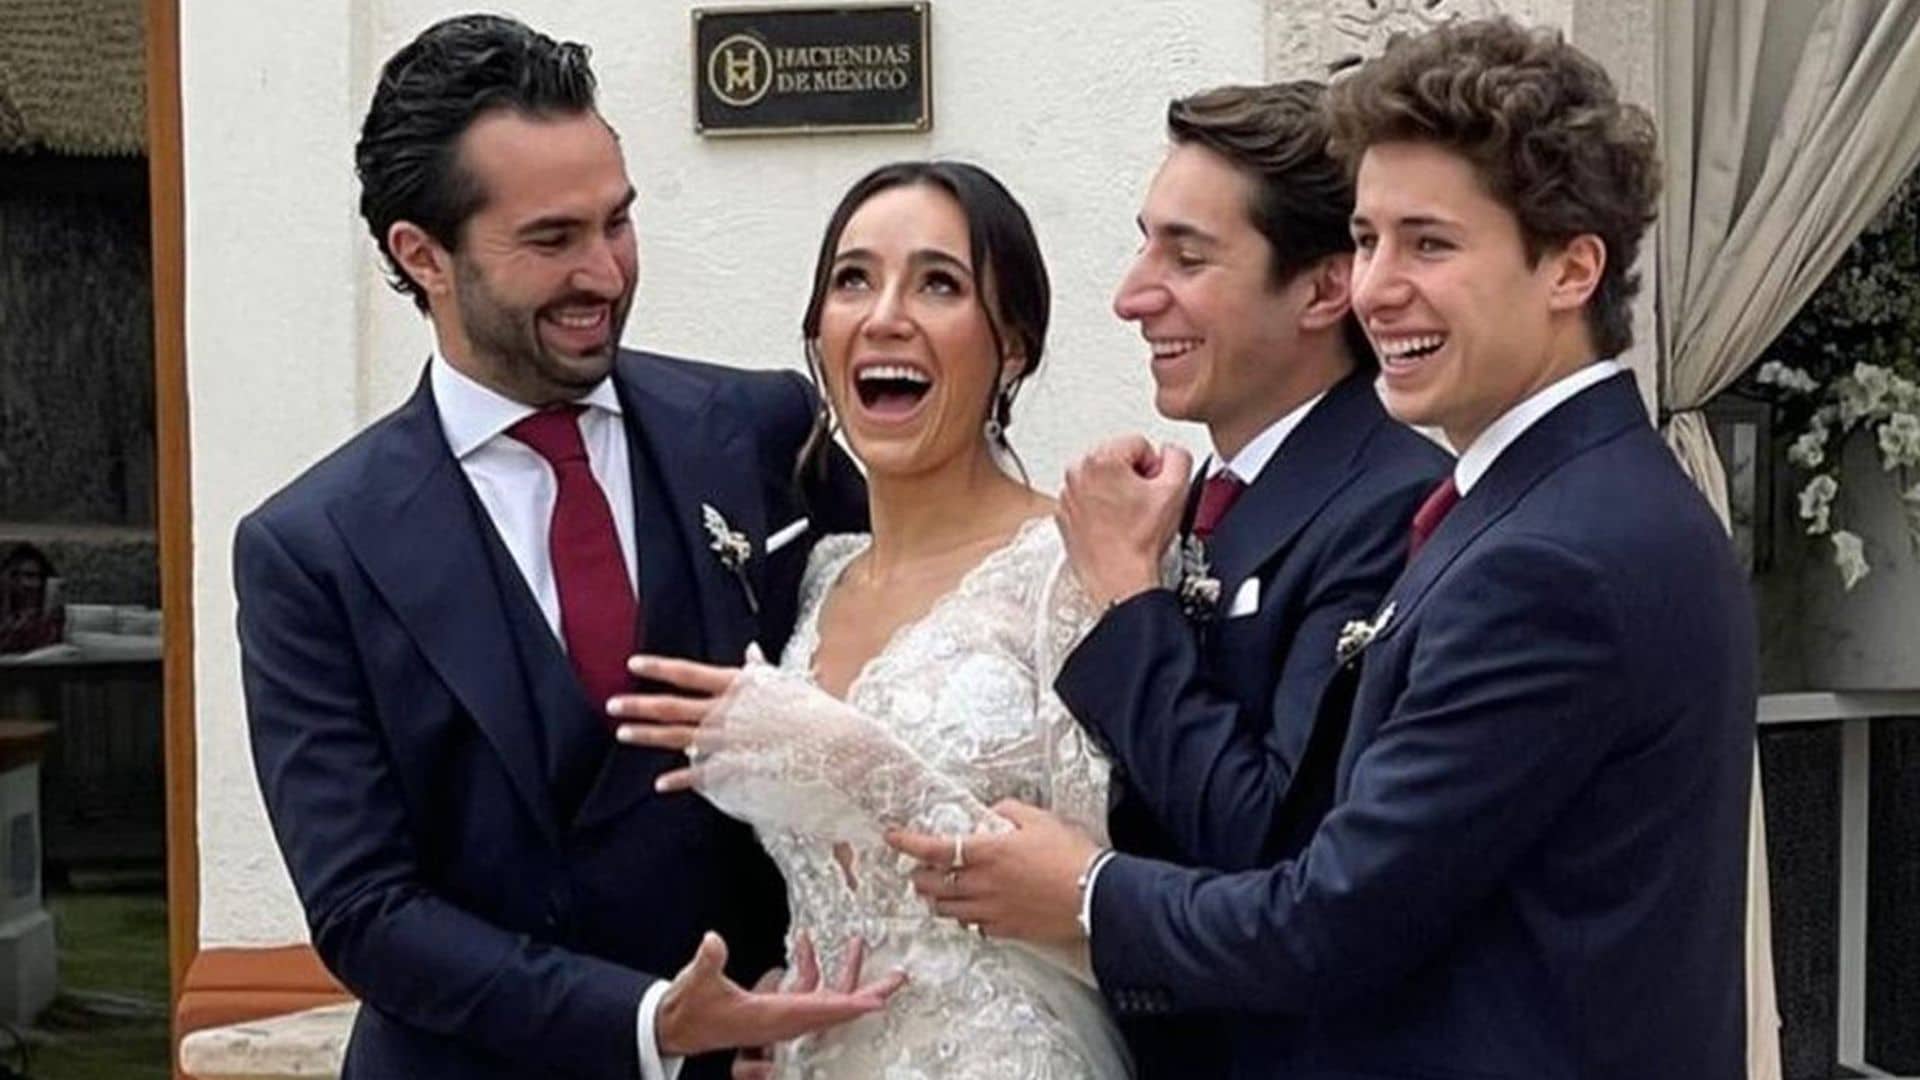 La boda de Pau Zurita, una gran cumbre de 'influencers': ¿Quién es quién en una de las familias más populares de México?